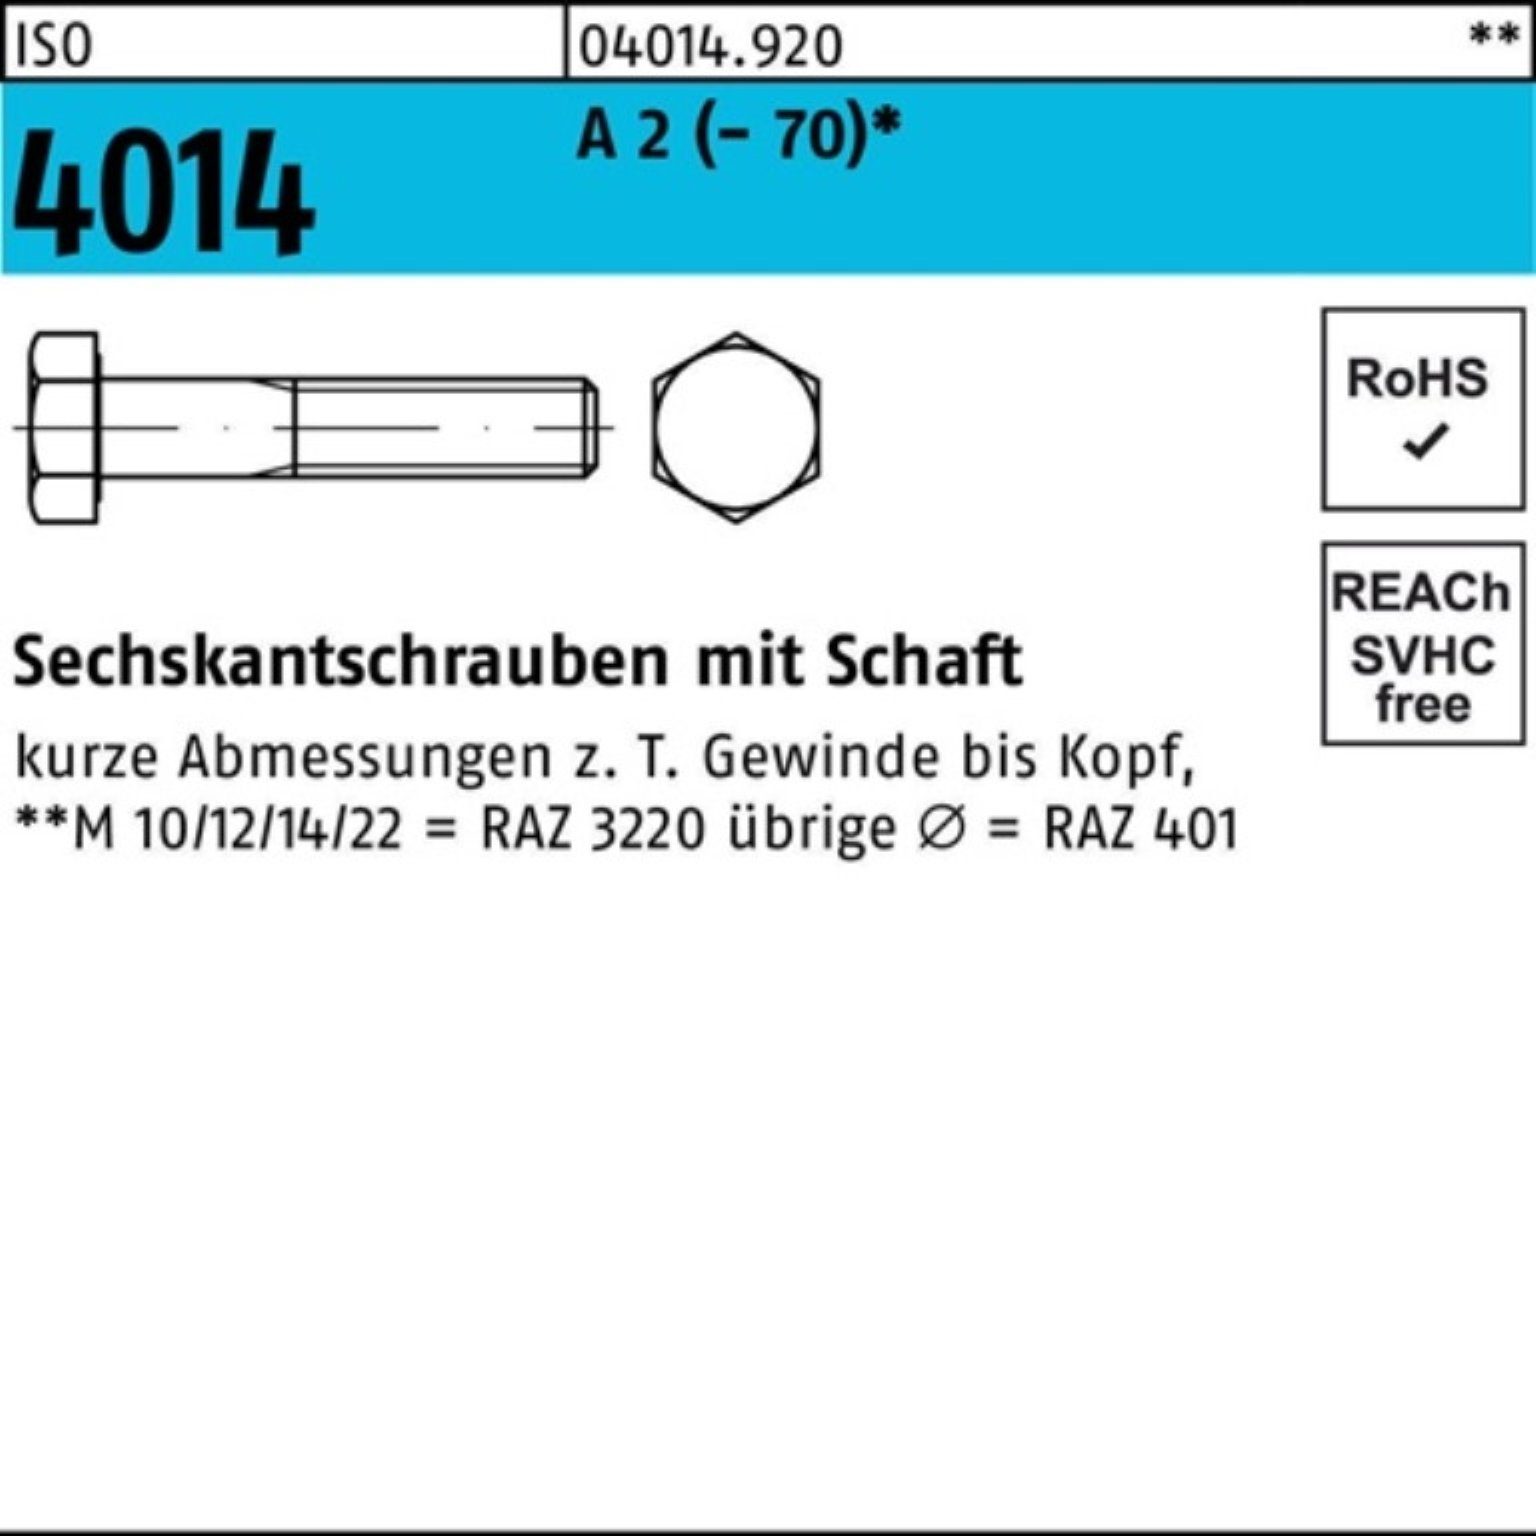 4014 50 ISO Sechskantschraube A (70) Schaft Sechskantschraube 100er St Bufab Pack 2 65 M14x